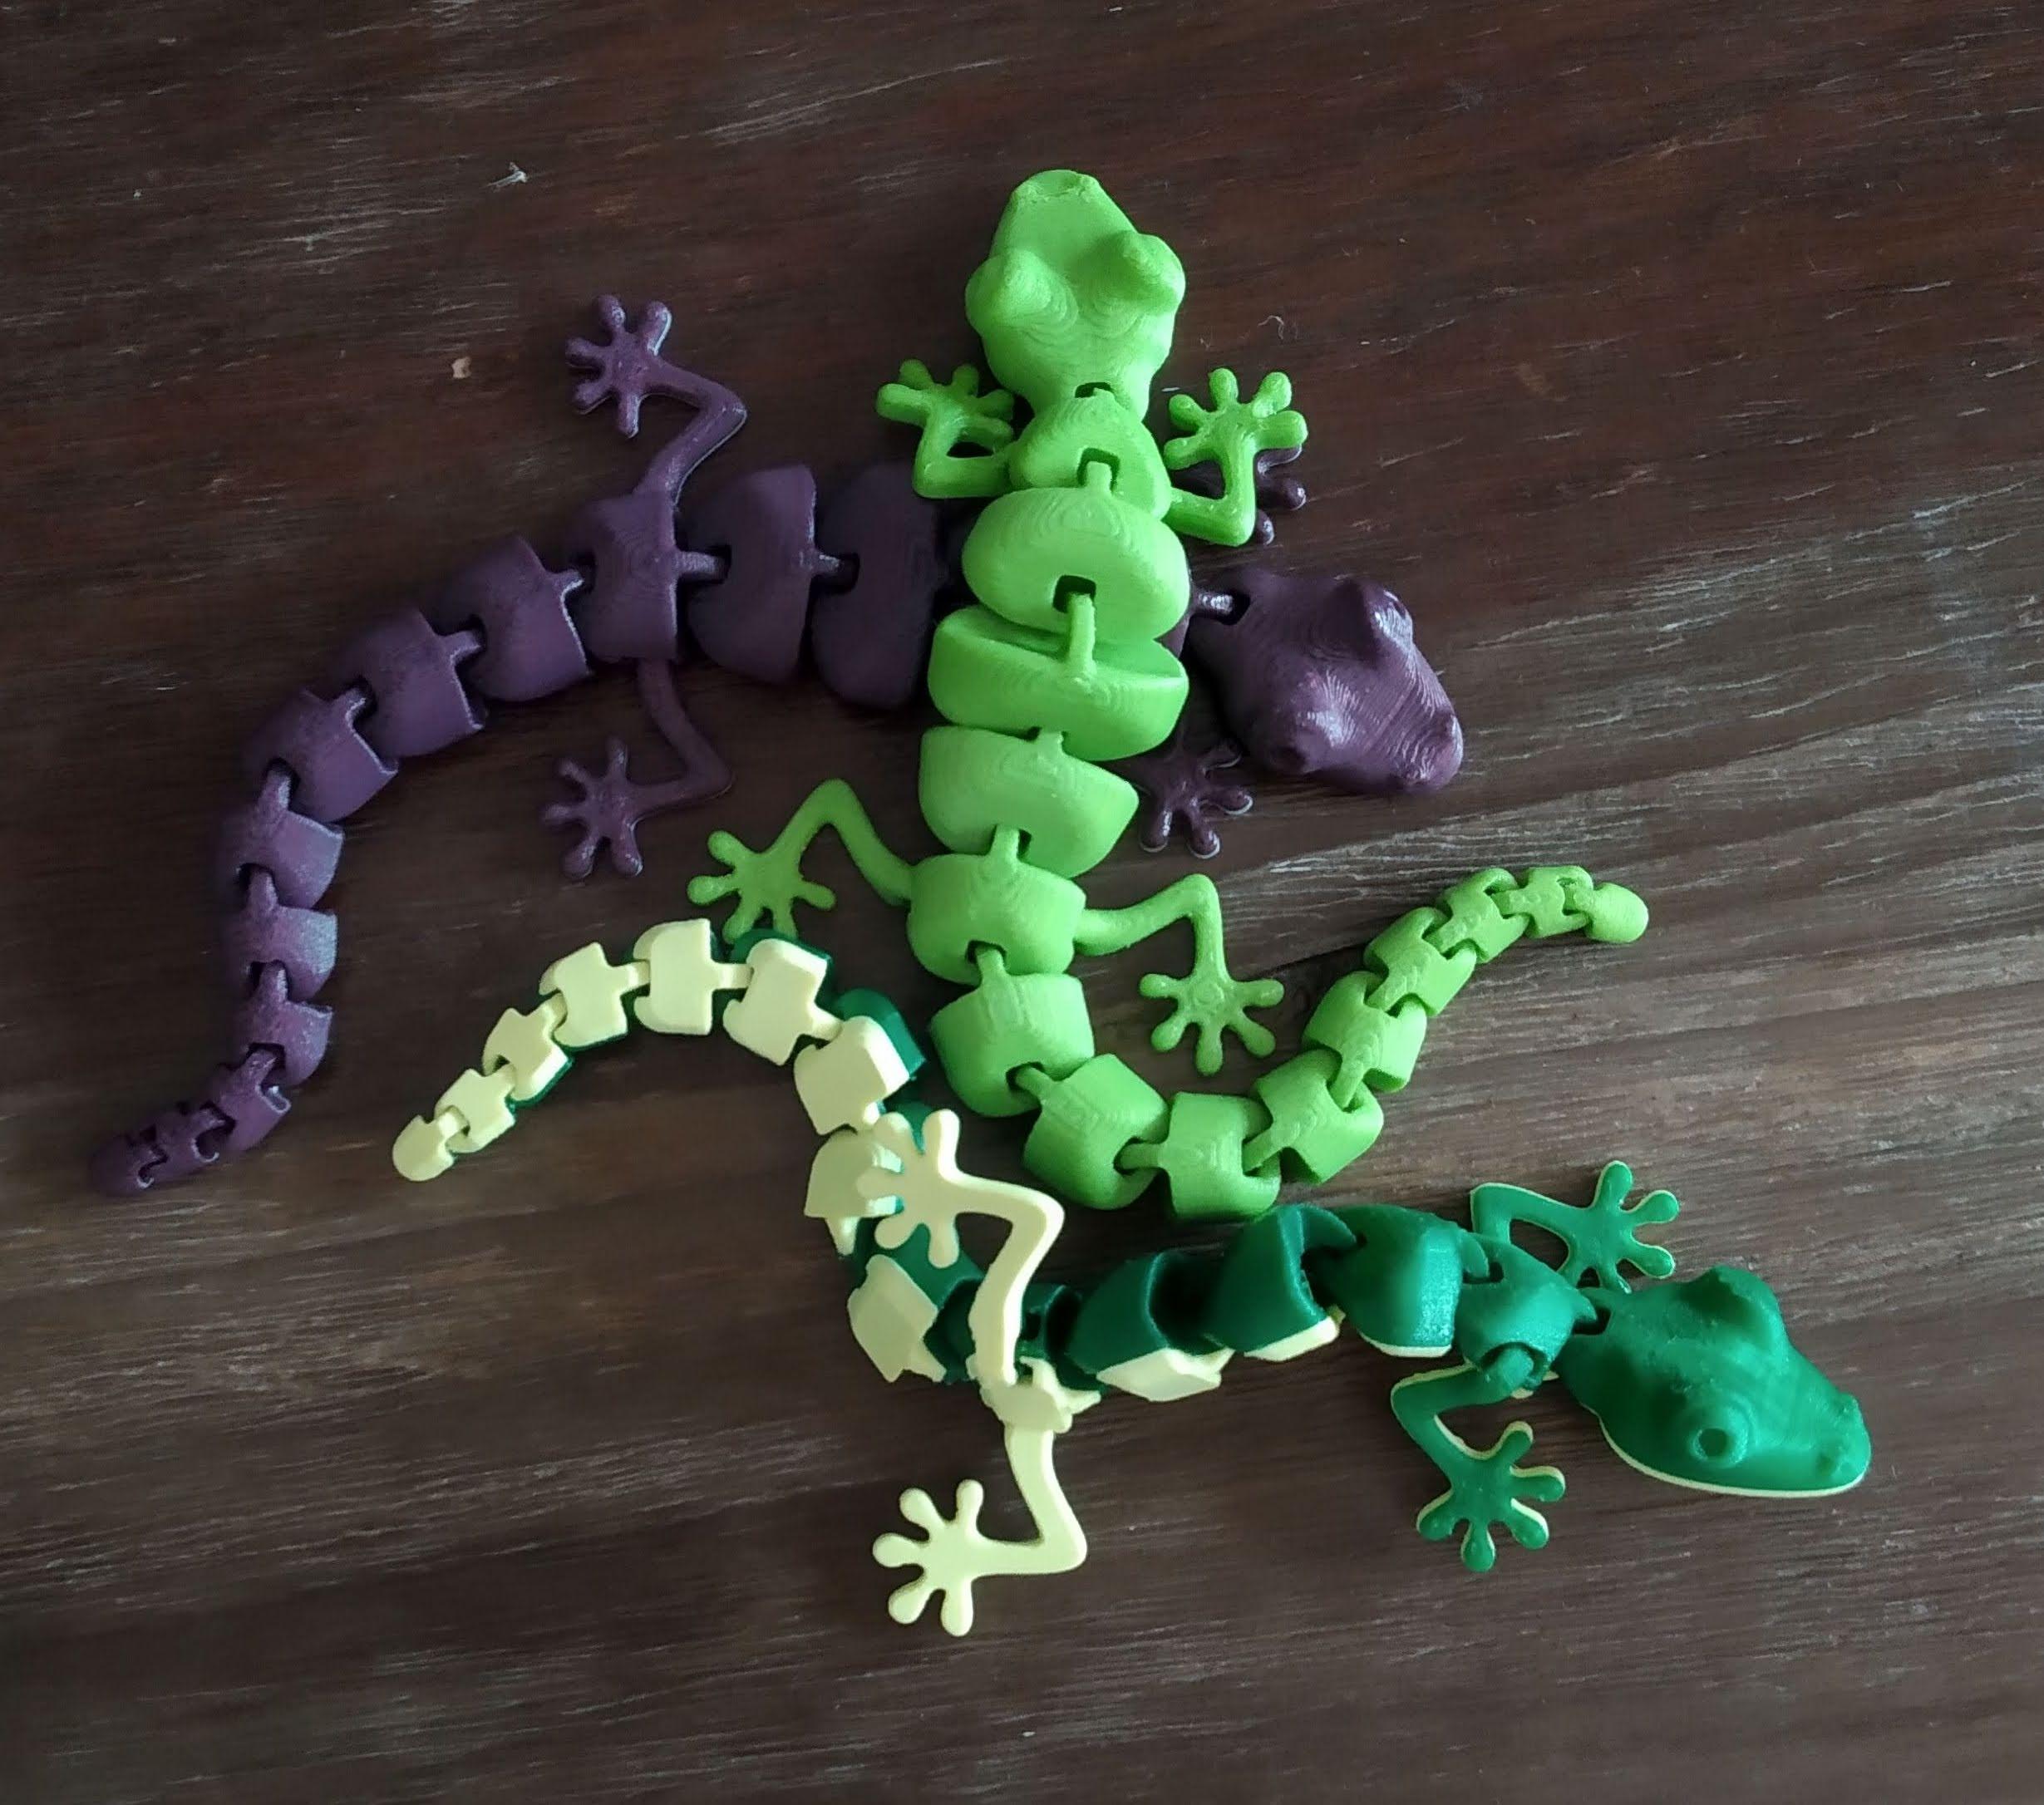 Articulated Lizard v2 3d model